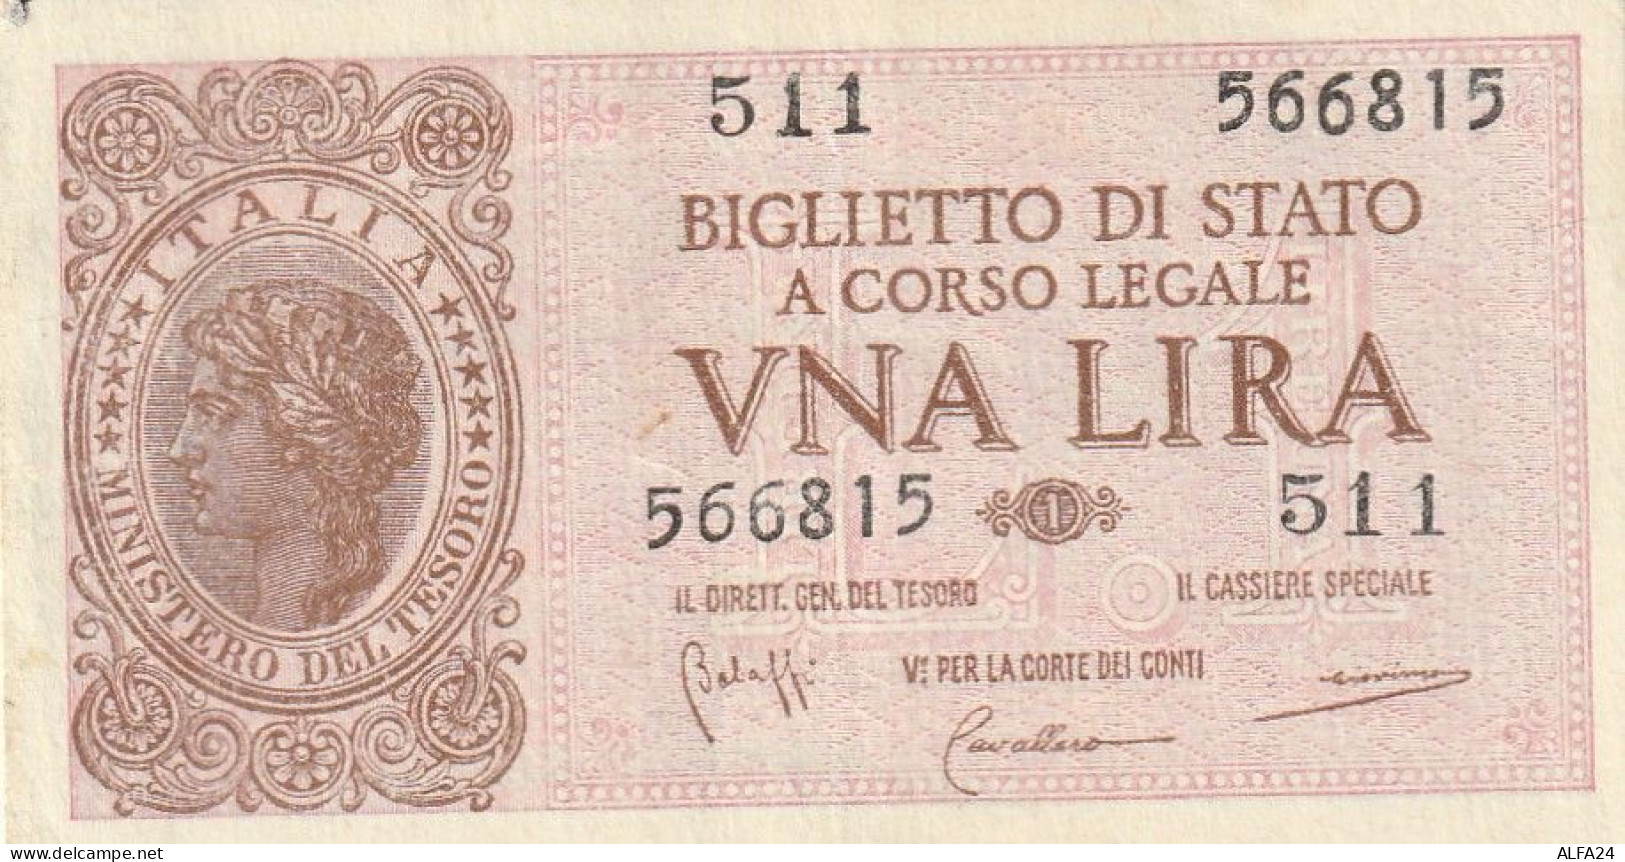 BANCONOTA BIGLIETTO DI STATO ITALIA 1 LIRA UNC  (B_358 - Italië – 1 Lira